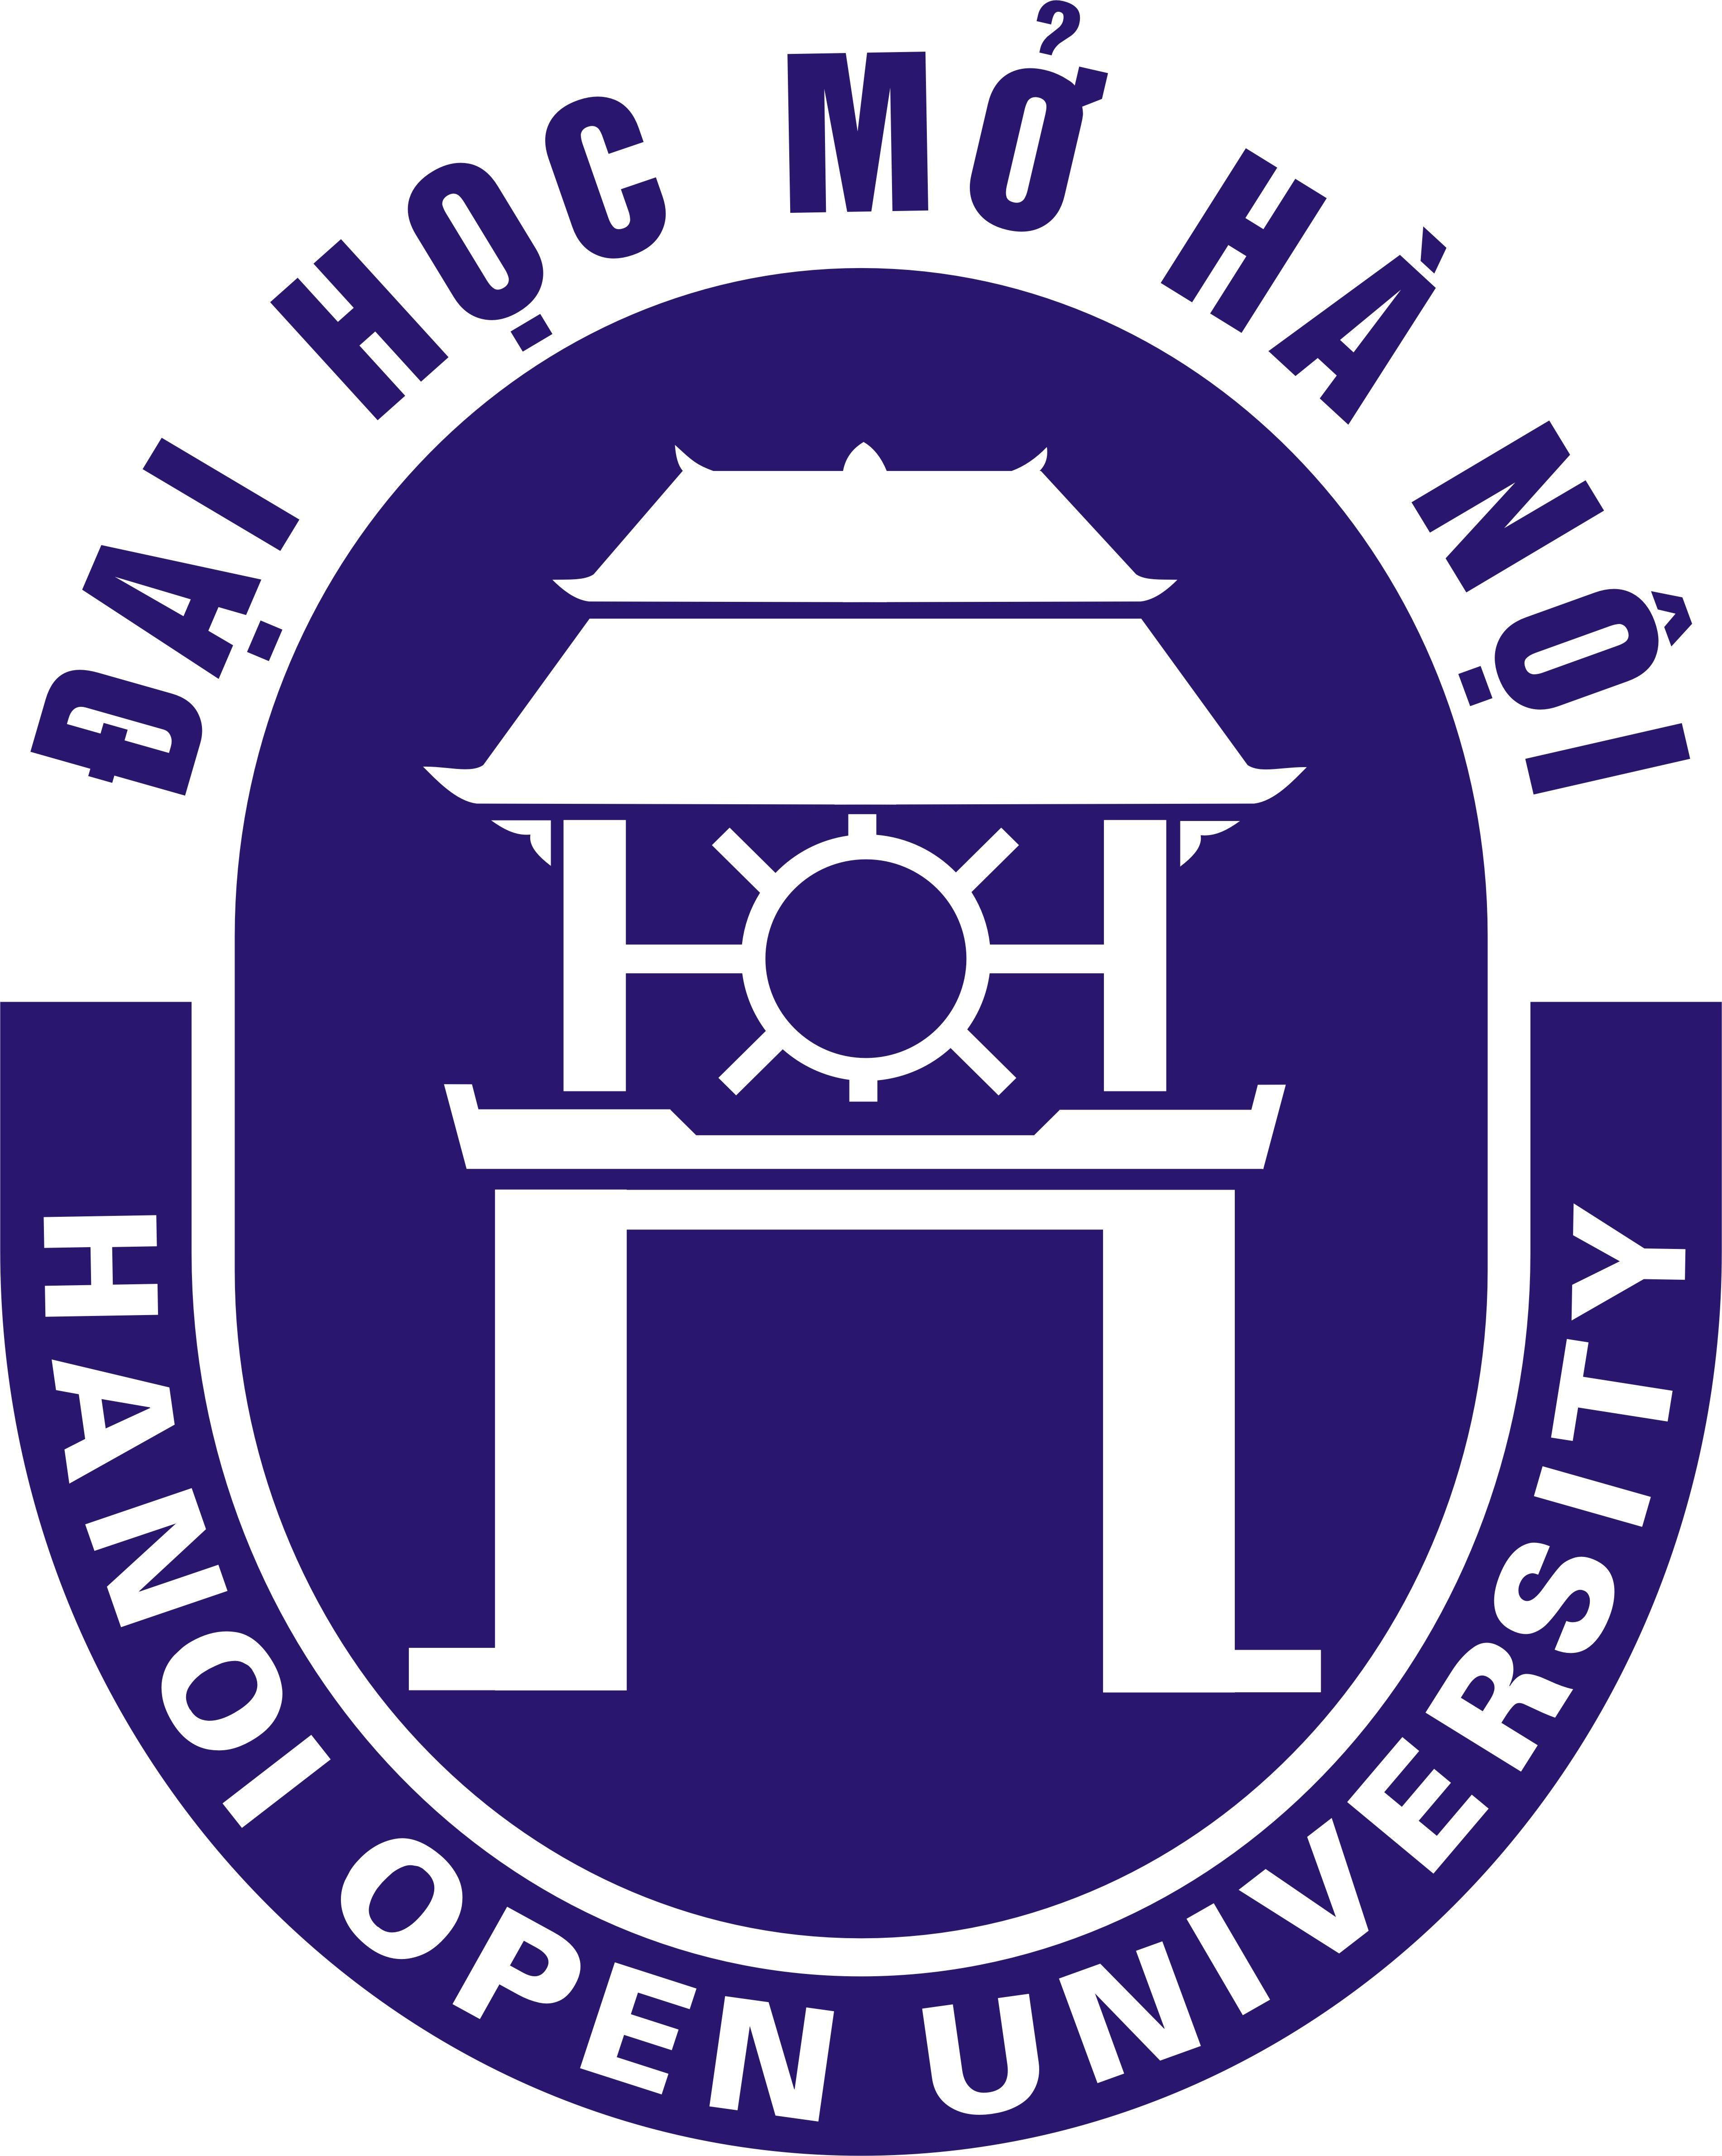 Hou Logo - logo-hou - Hướng nghiệp chất lượng cao - Hướng nghiệp chất lượng cao